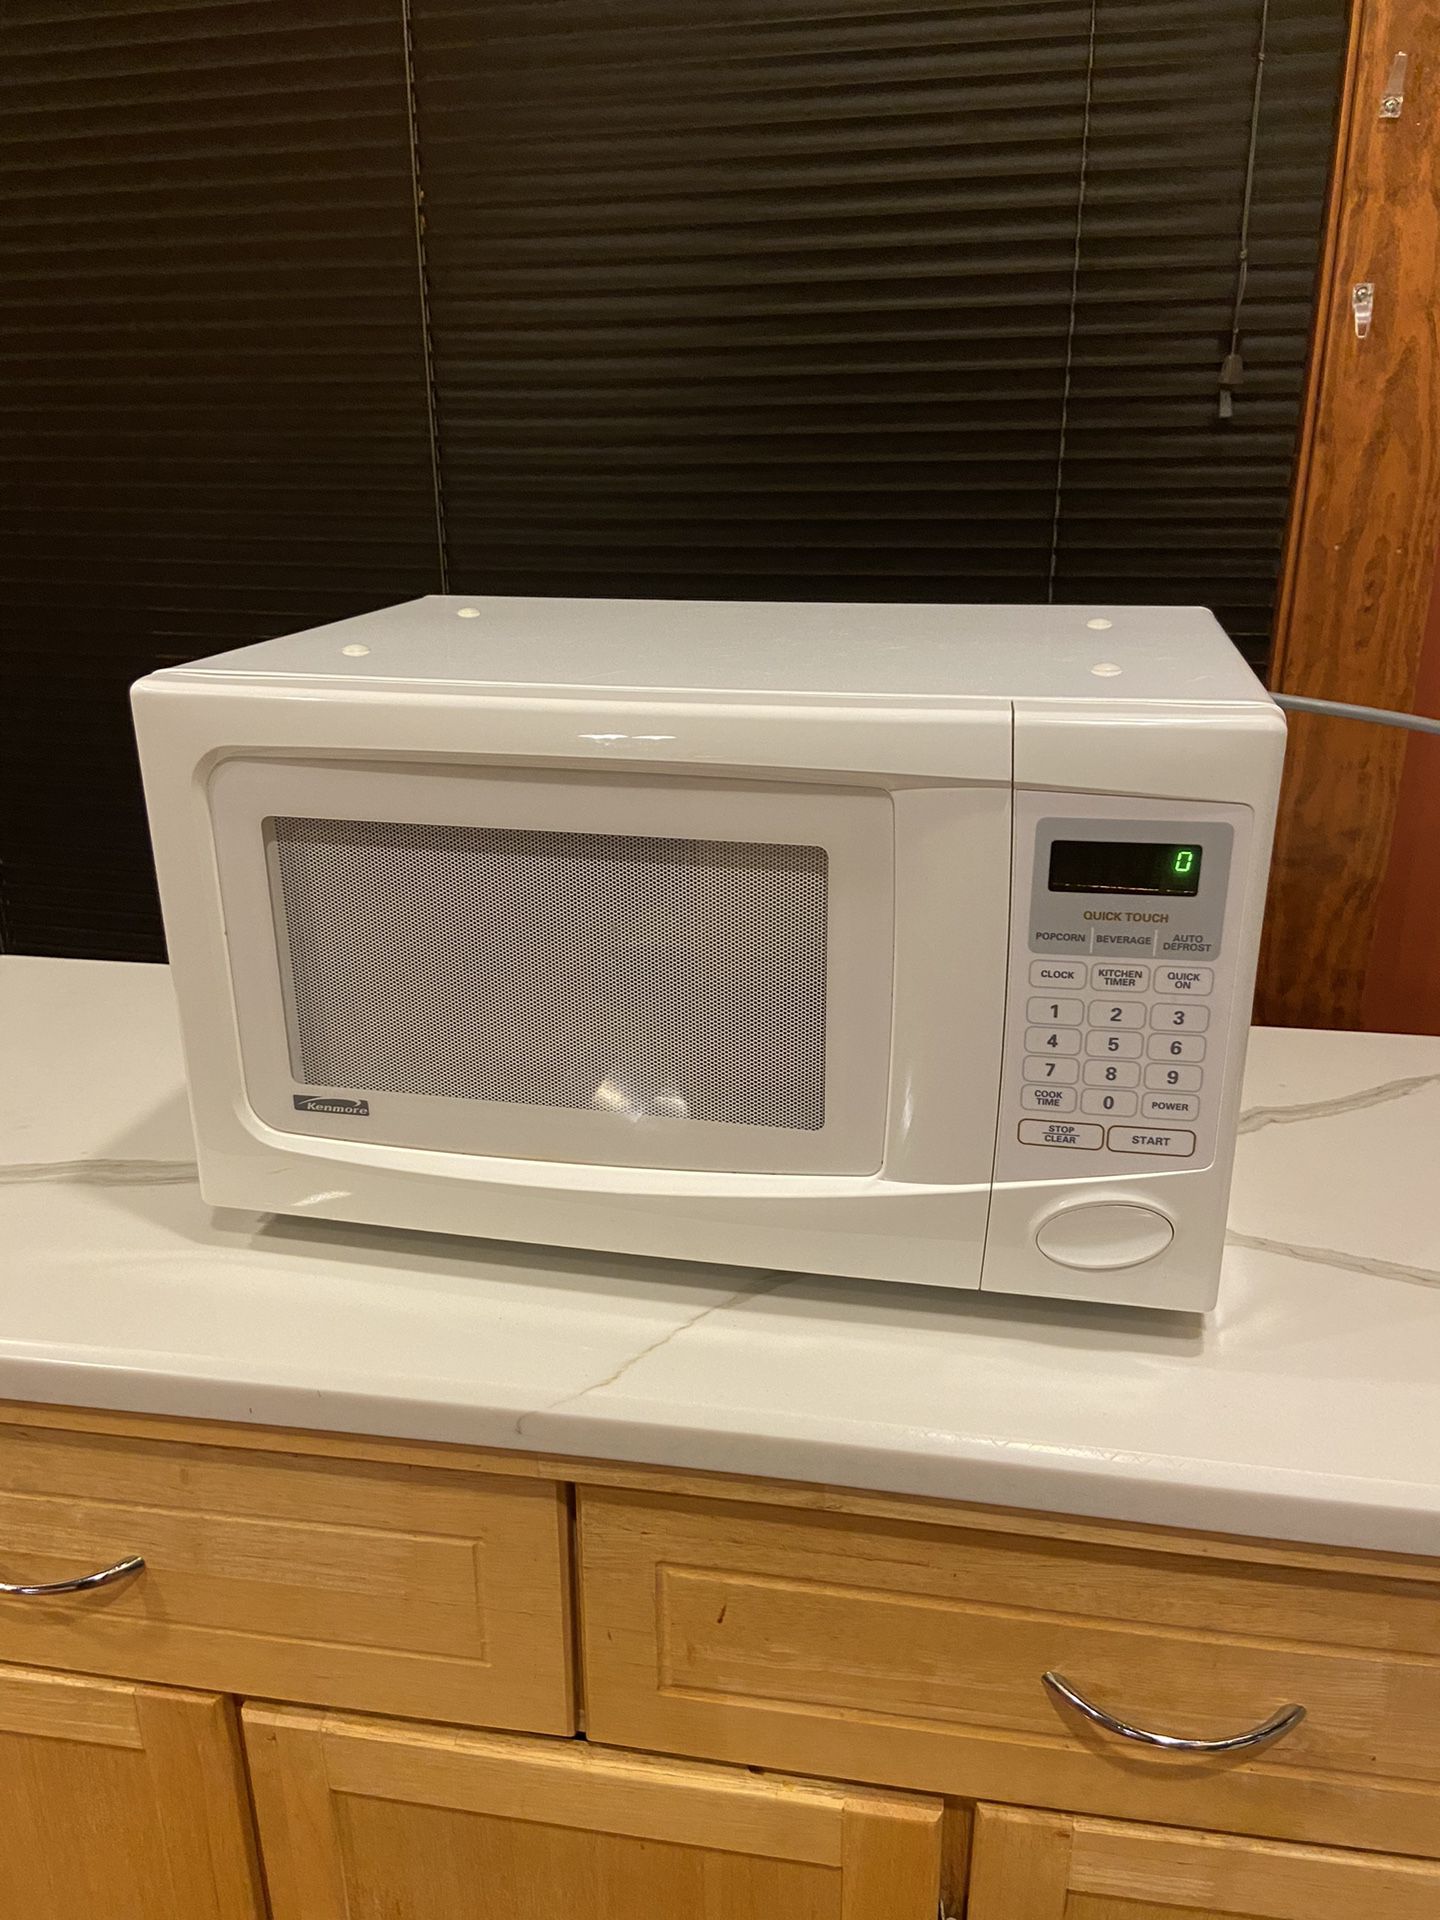 Kenmore Microwave